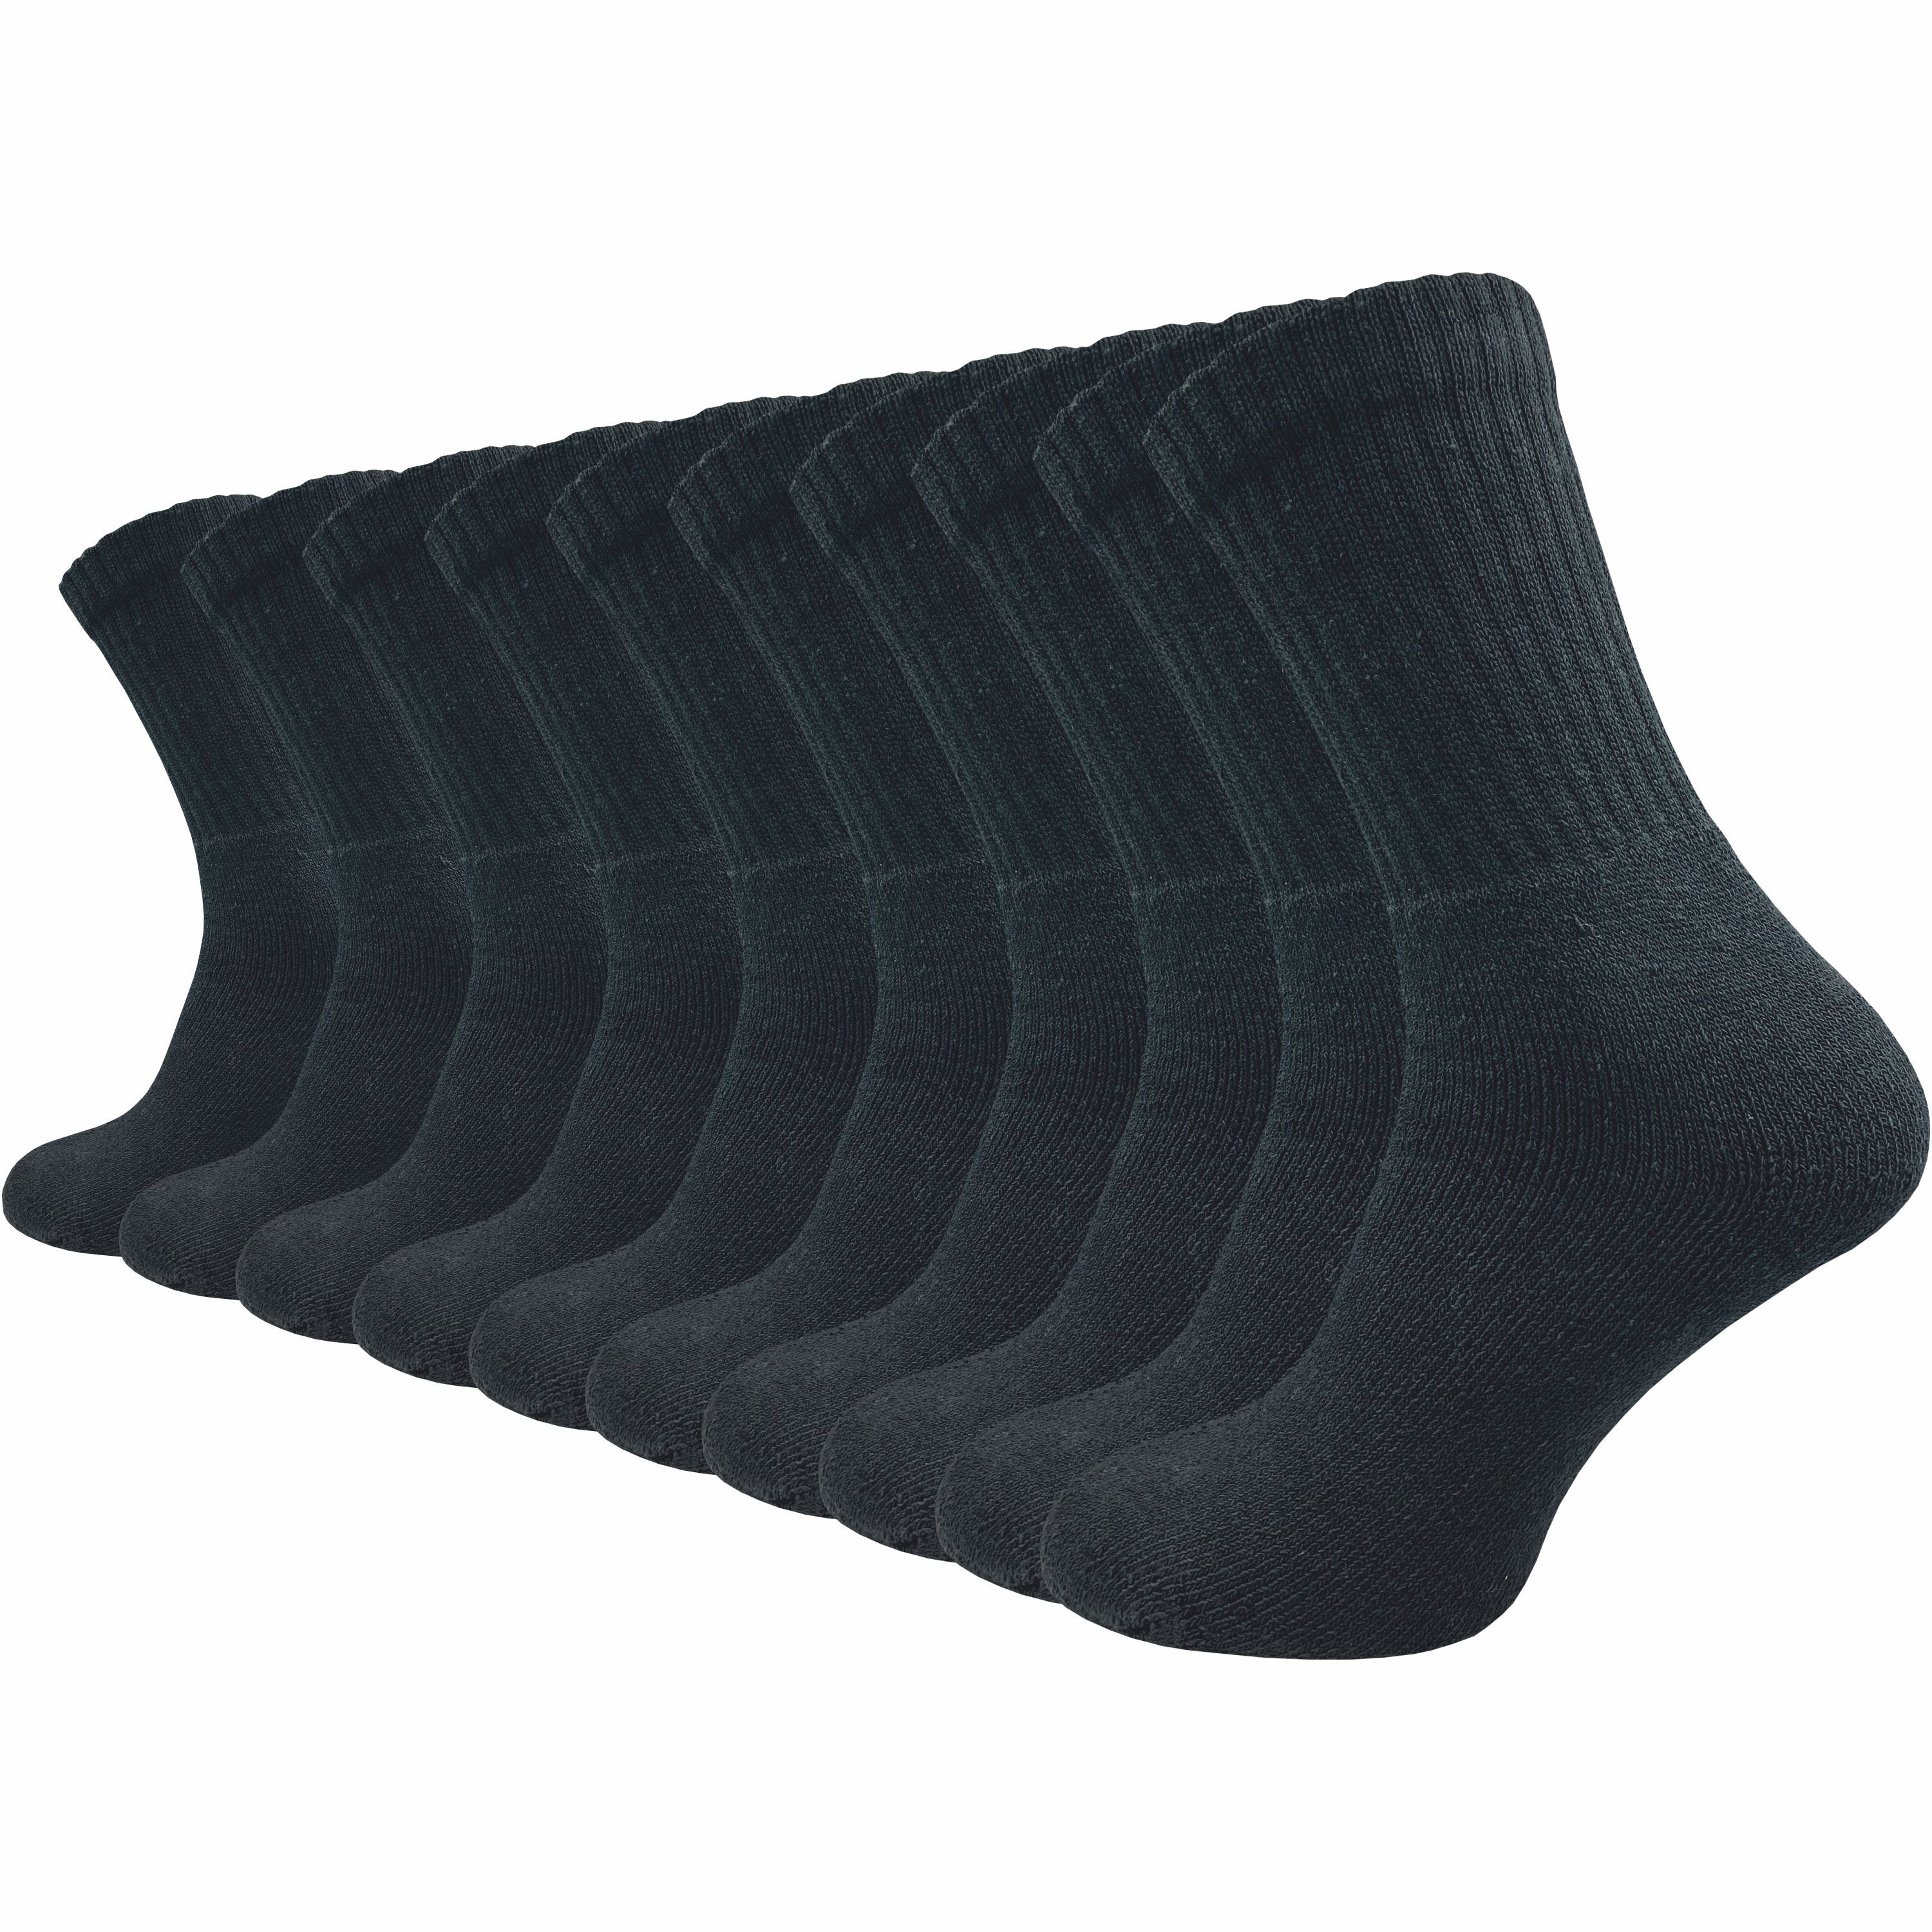 GAWILO Arbeitssocken für Herren - schlichter, cleaner Look - extra verstärkter Plüschfuß (10 Paar) WORK Socken mit Baumwolle sind atmungsaktiv und verhindern Schweißfüße